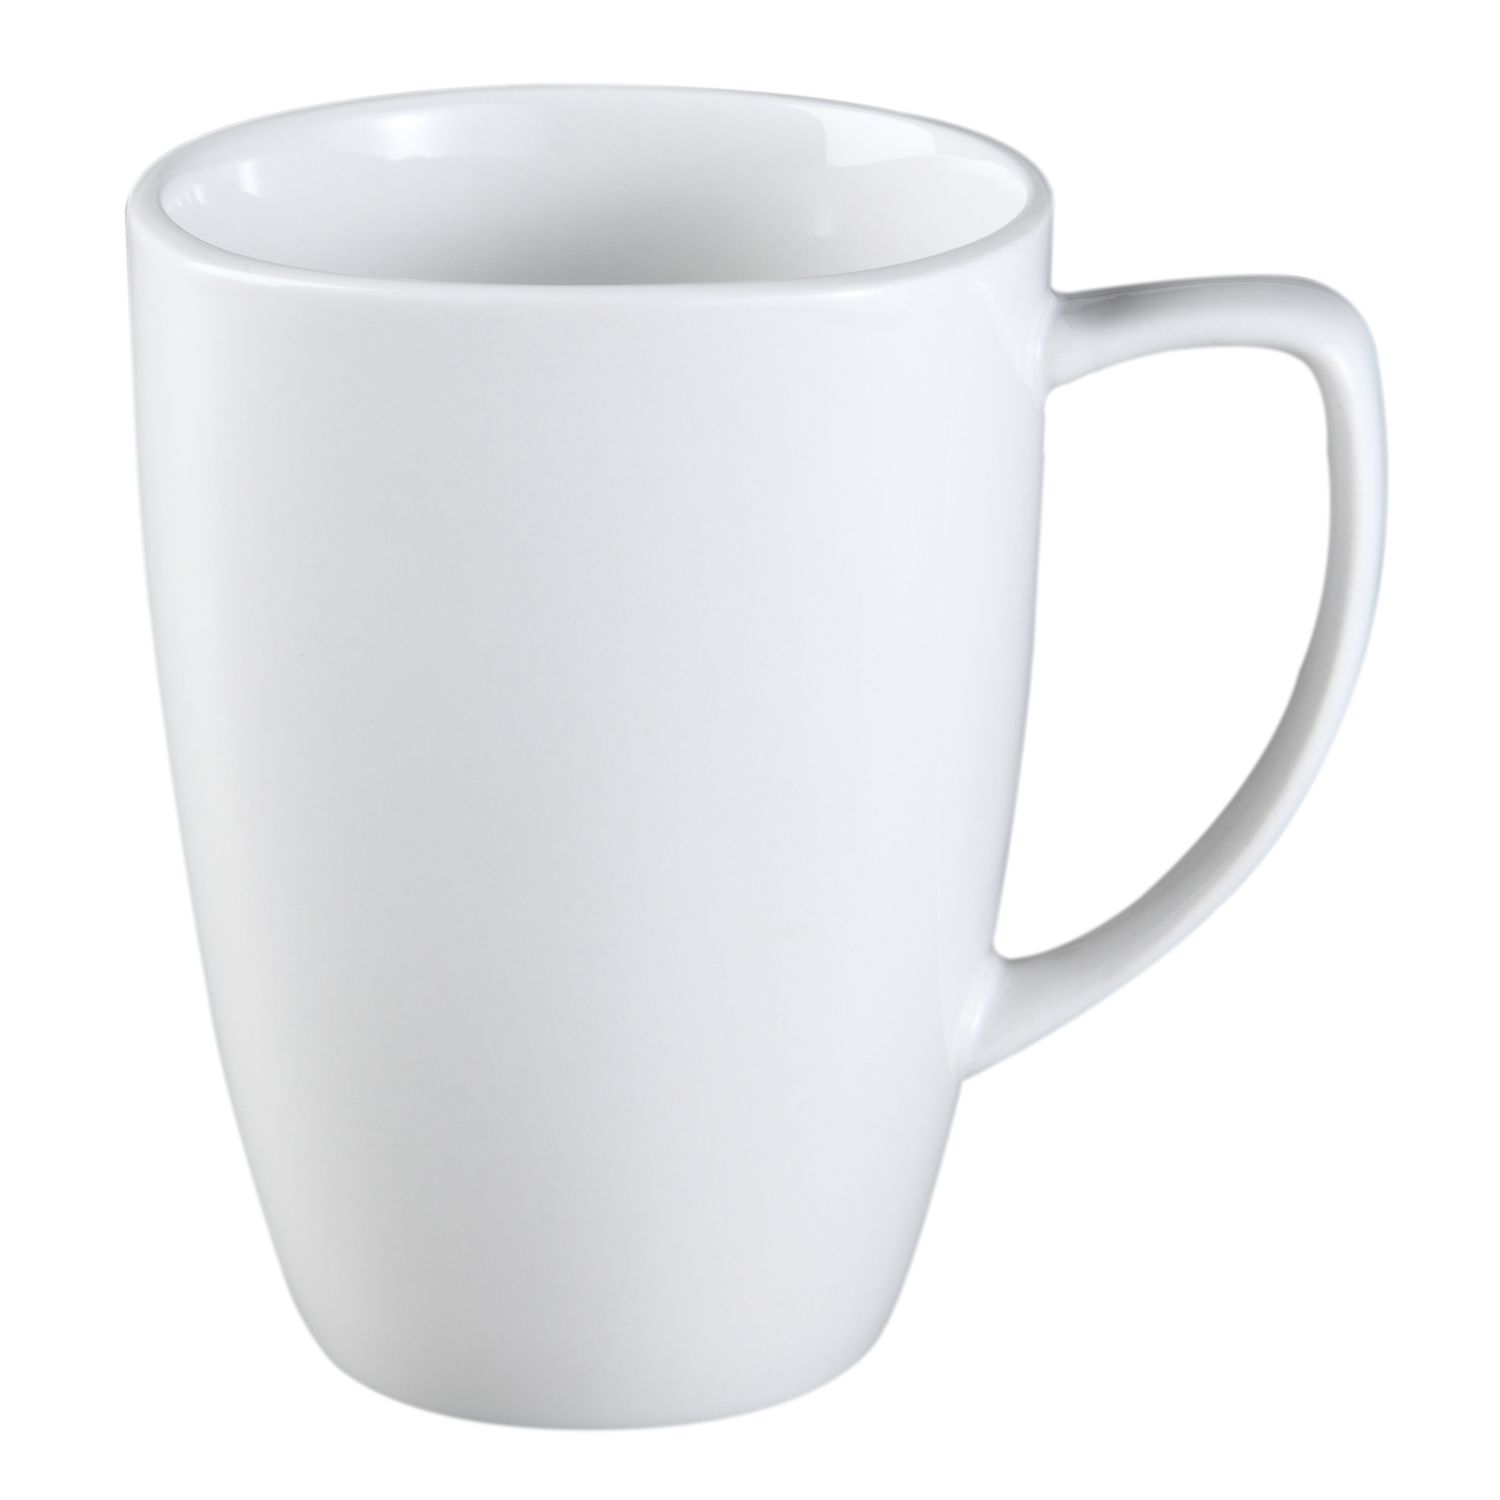 White ceramic mugs photo